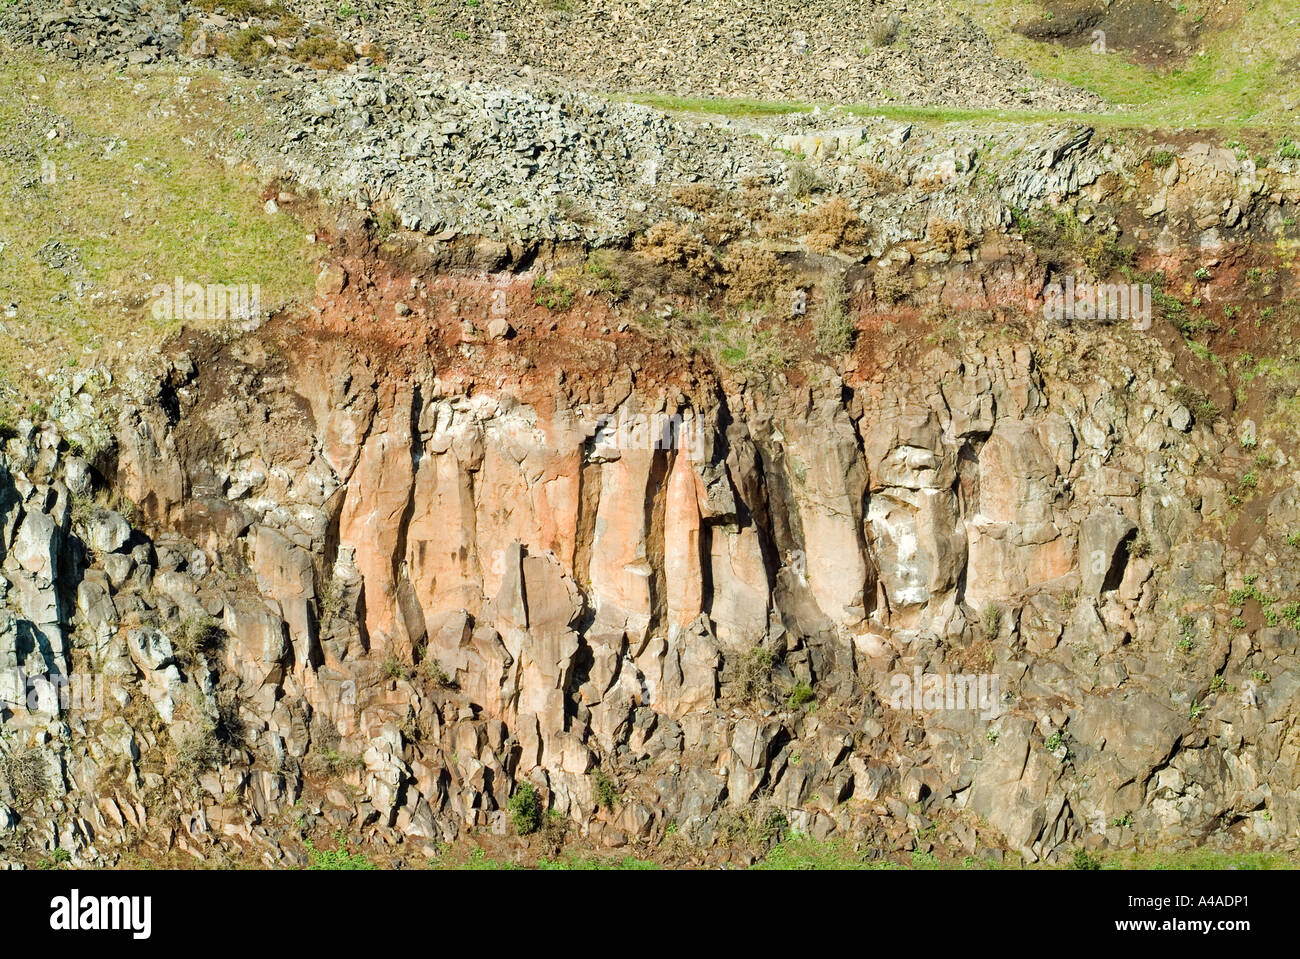 La faccia di Cava della cava in disuso a Halswell Christchurch Nuova Zelanda che è stata trasformata in un parco Foto Stock